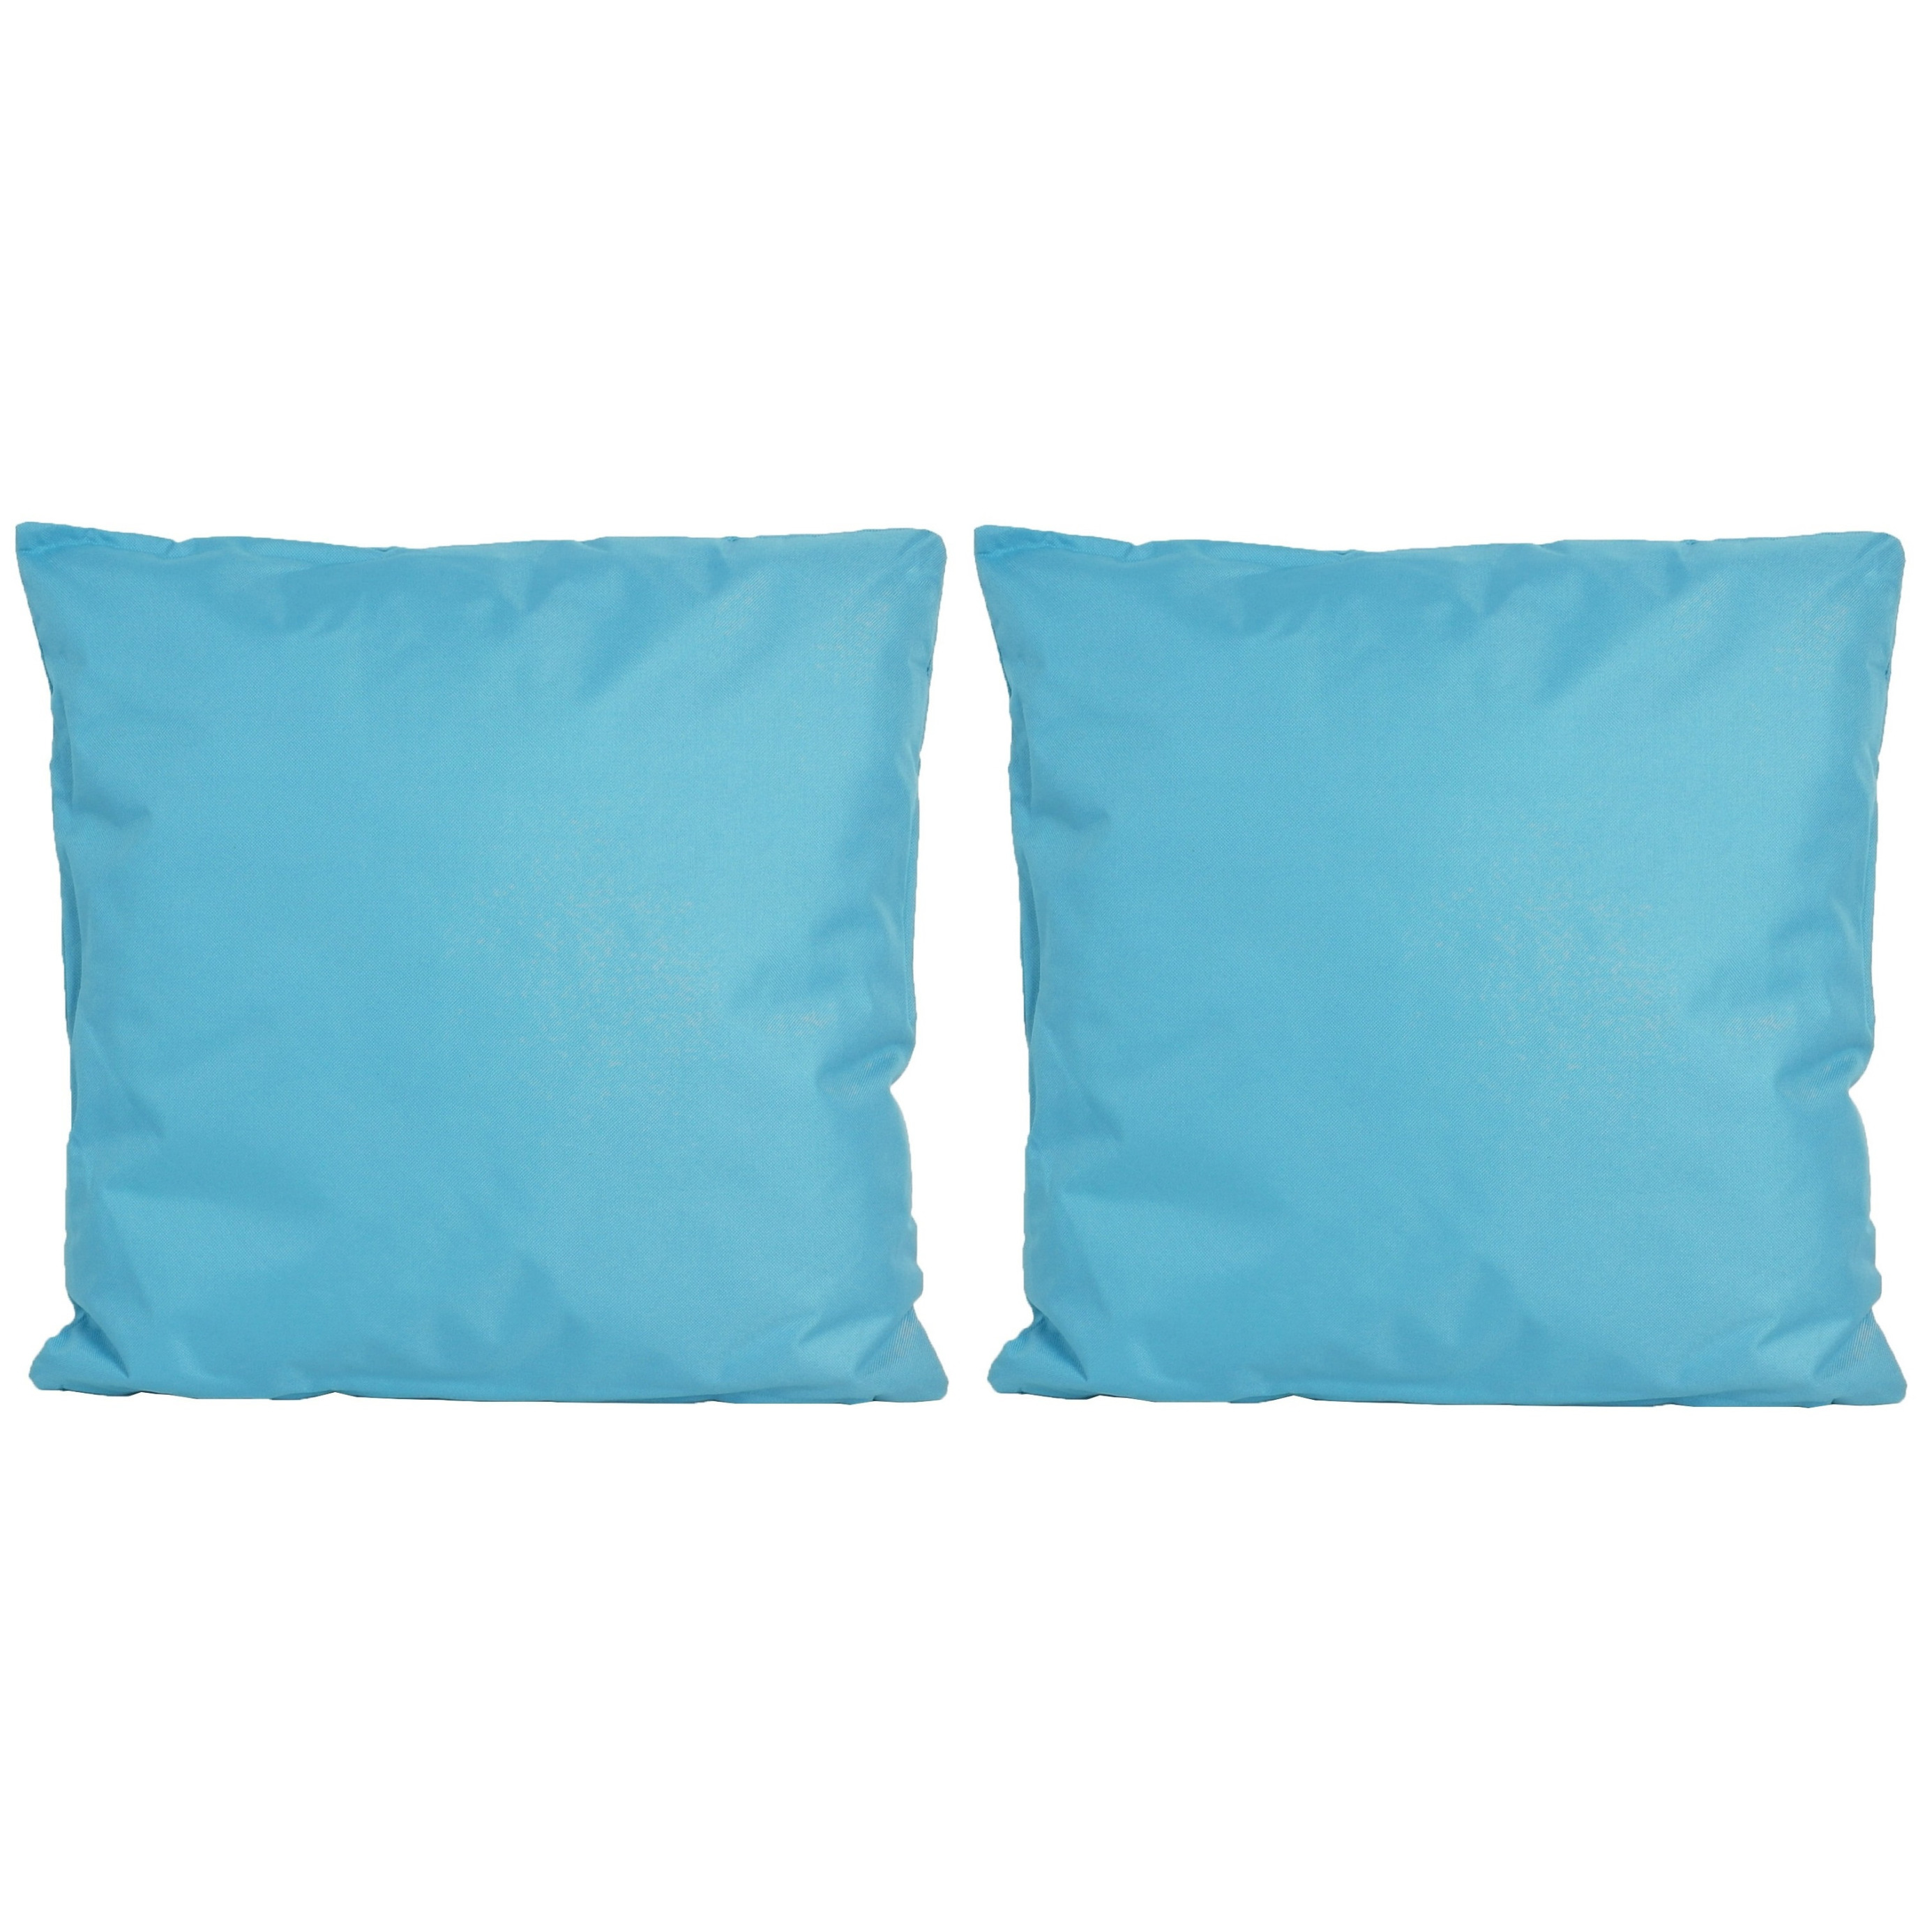 8x Bank-sier kussens voor binnen en buiten in de kleur lichtblauw 45 x 45 cm